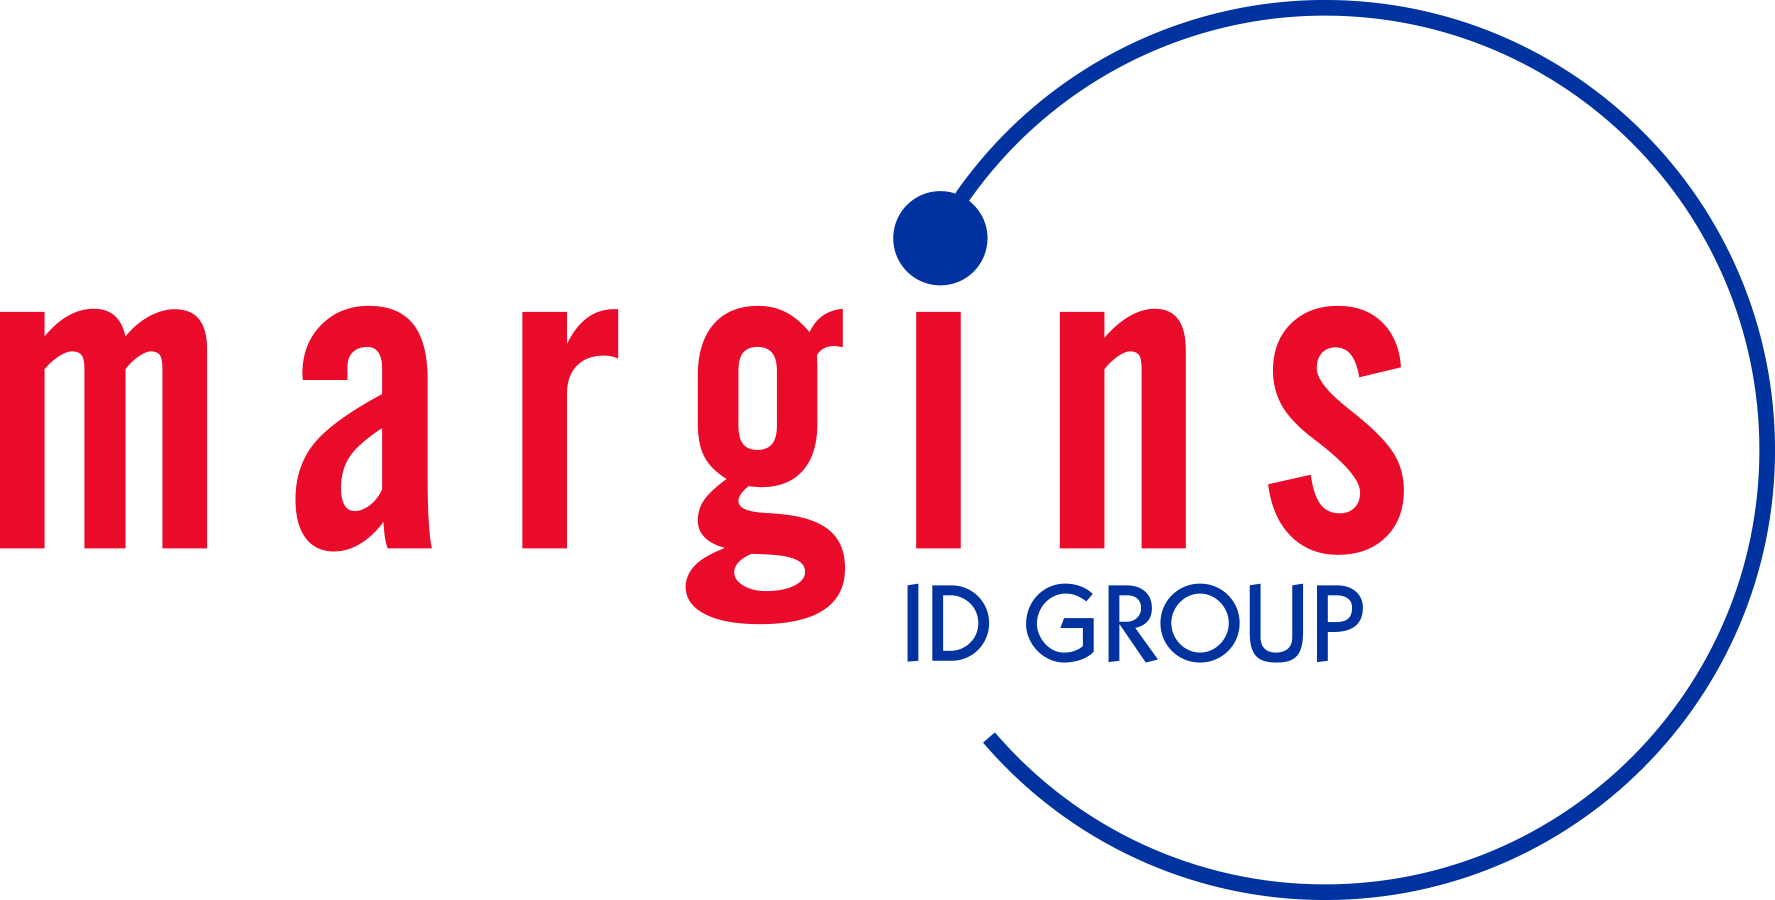 Margins id group